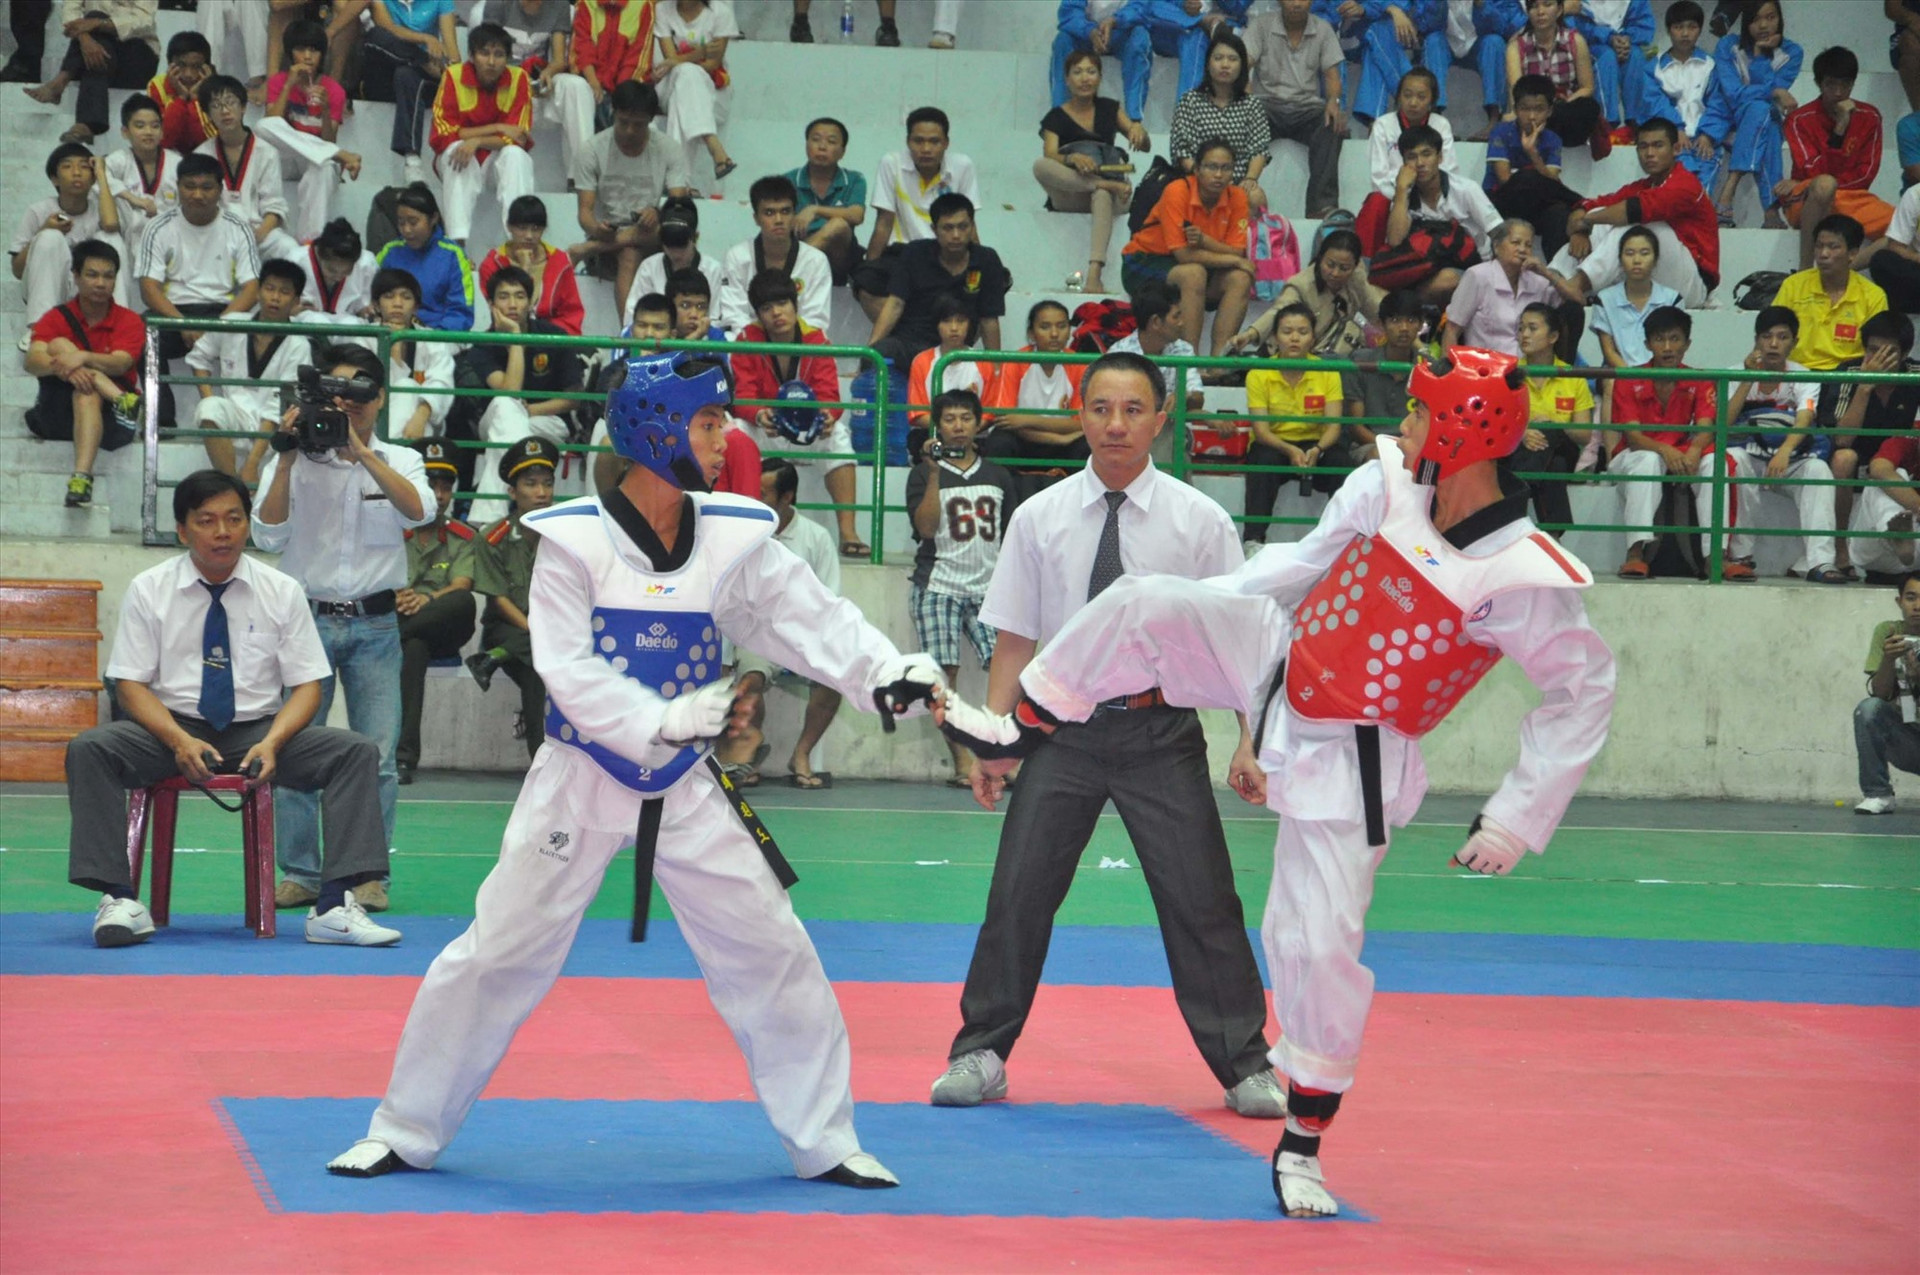 Giải vô địch Taekwondo toàn quốc năm 2015 diễn ra tại Quảng Nam. Ảnh: T.VY